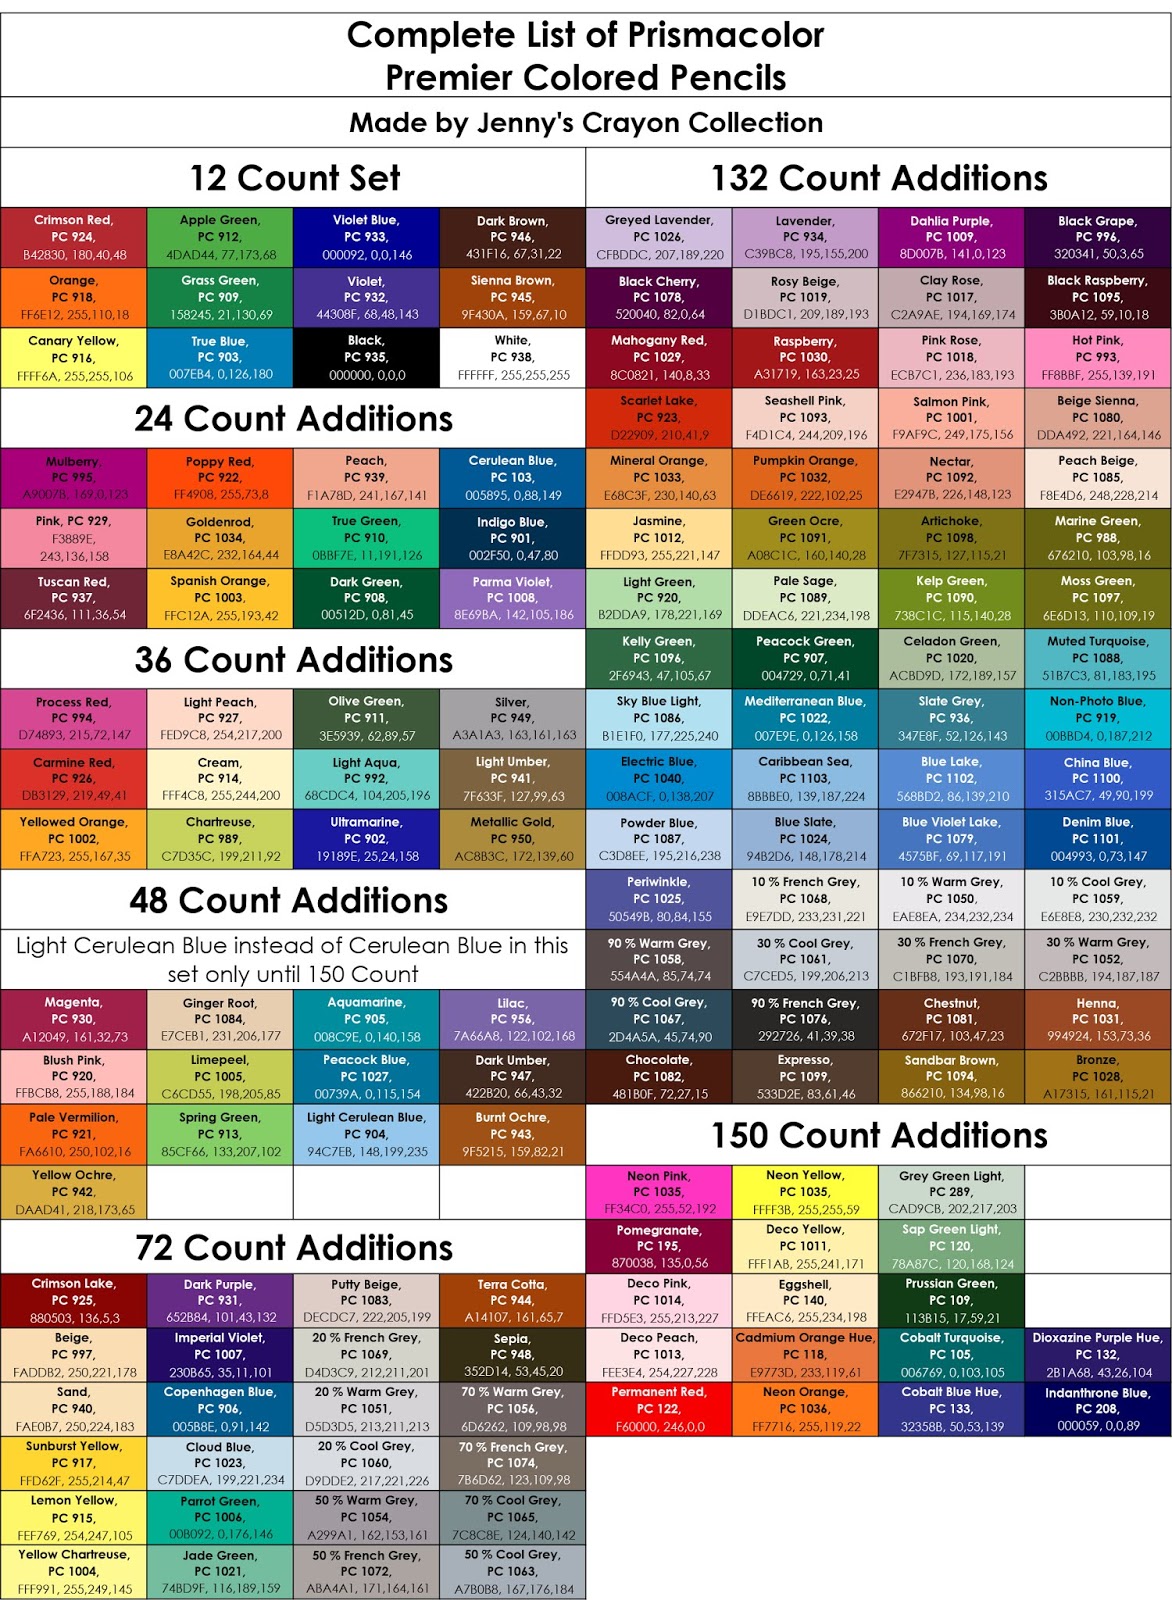 Complete List of Prismacolor Premier Colored Pencils | Jenny's Crayon